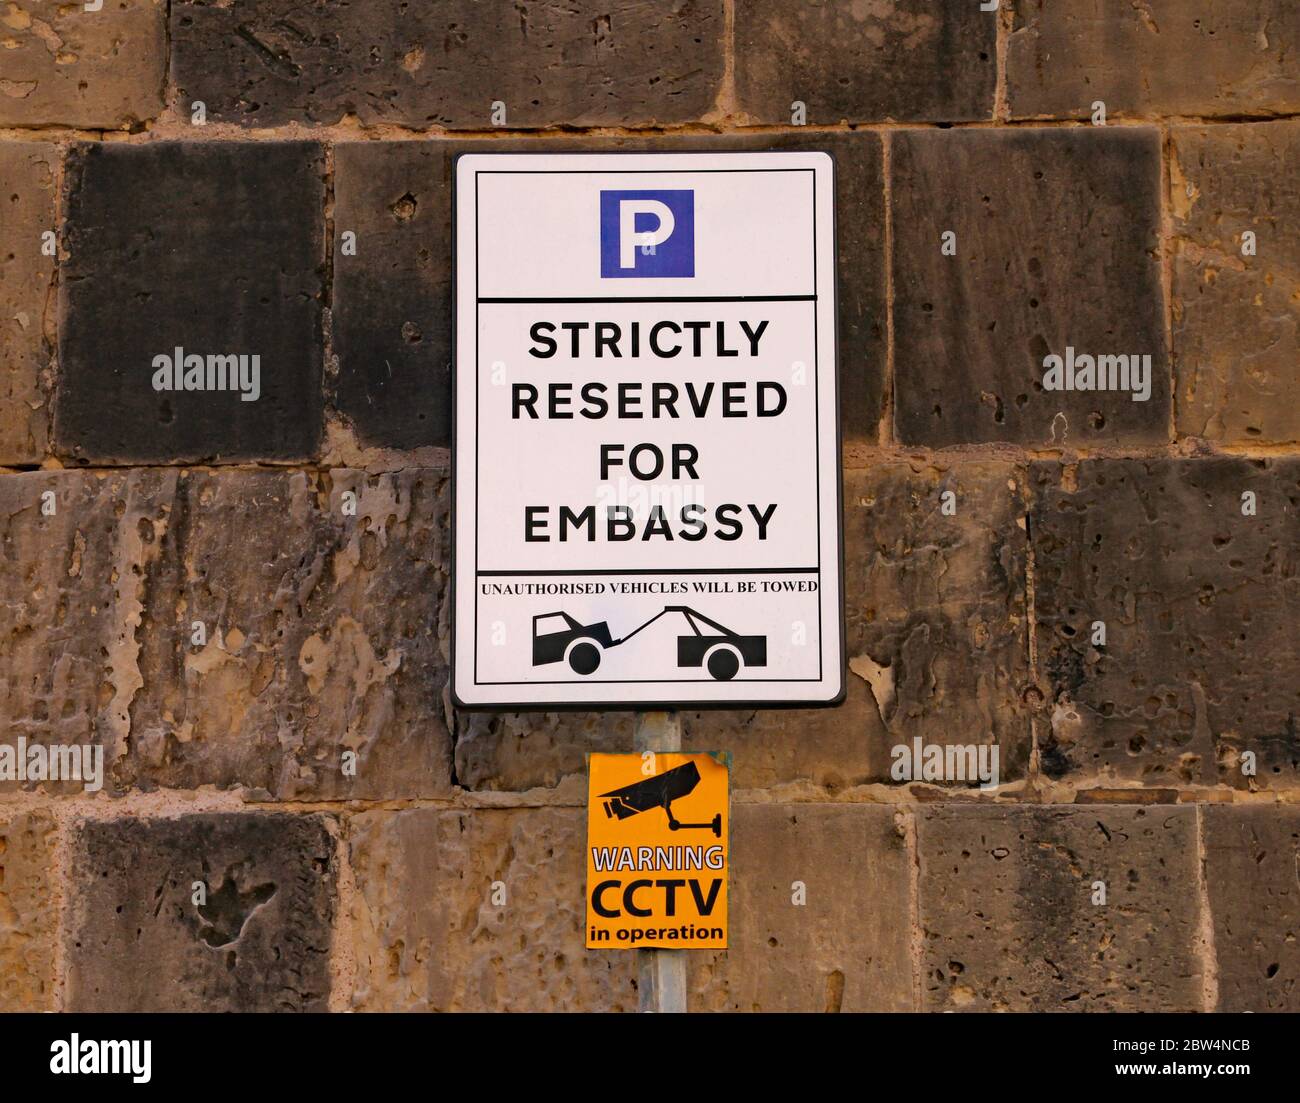 Un panneau indiquant que le parking est strictement réservé au personnel de l'ambassade. La défaillance entraînera le remorquage du véhicule Banque D'Images